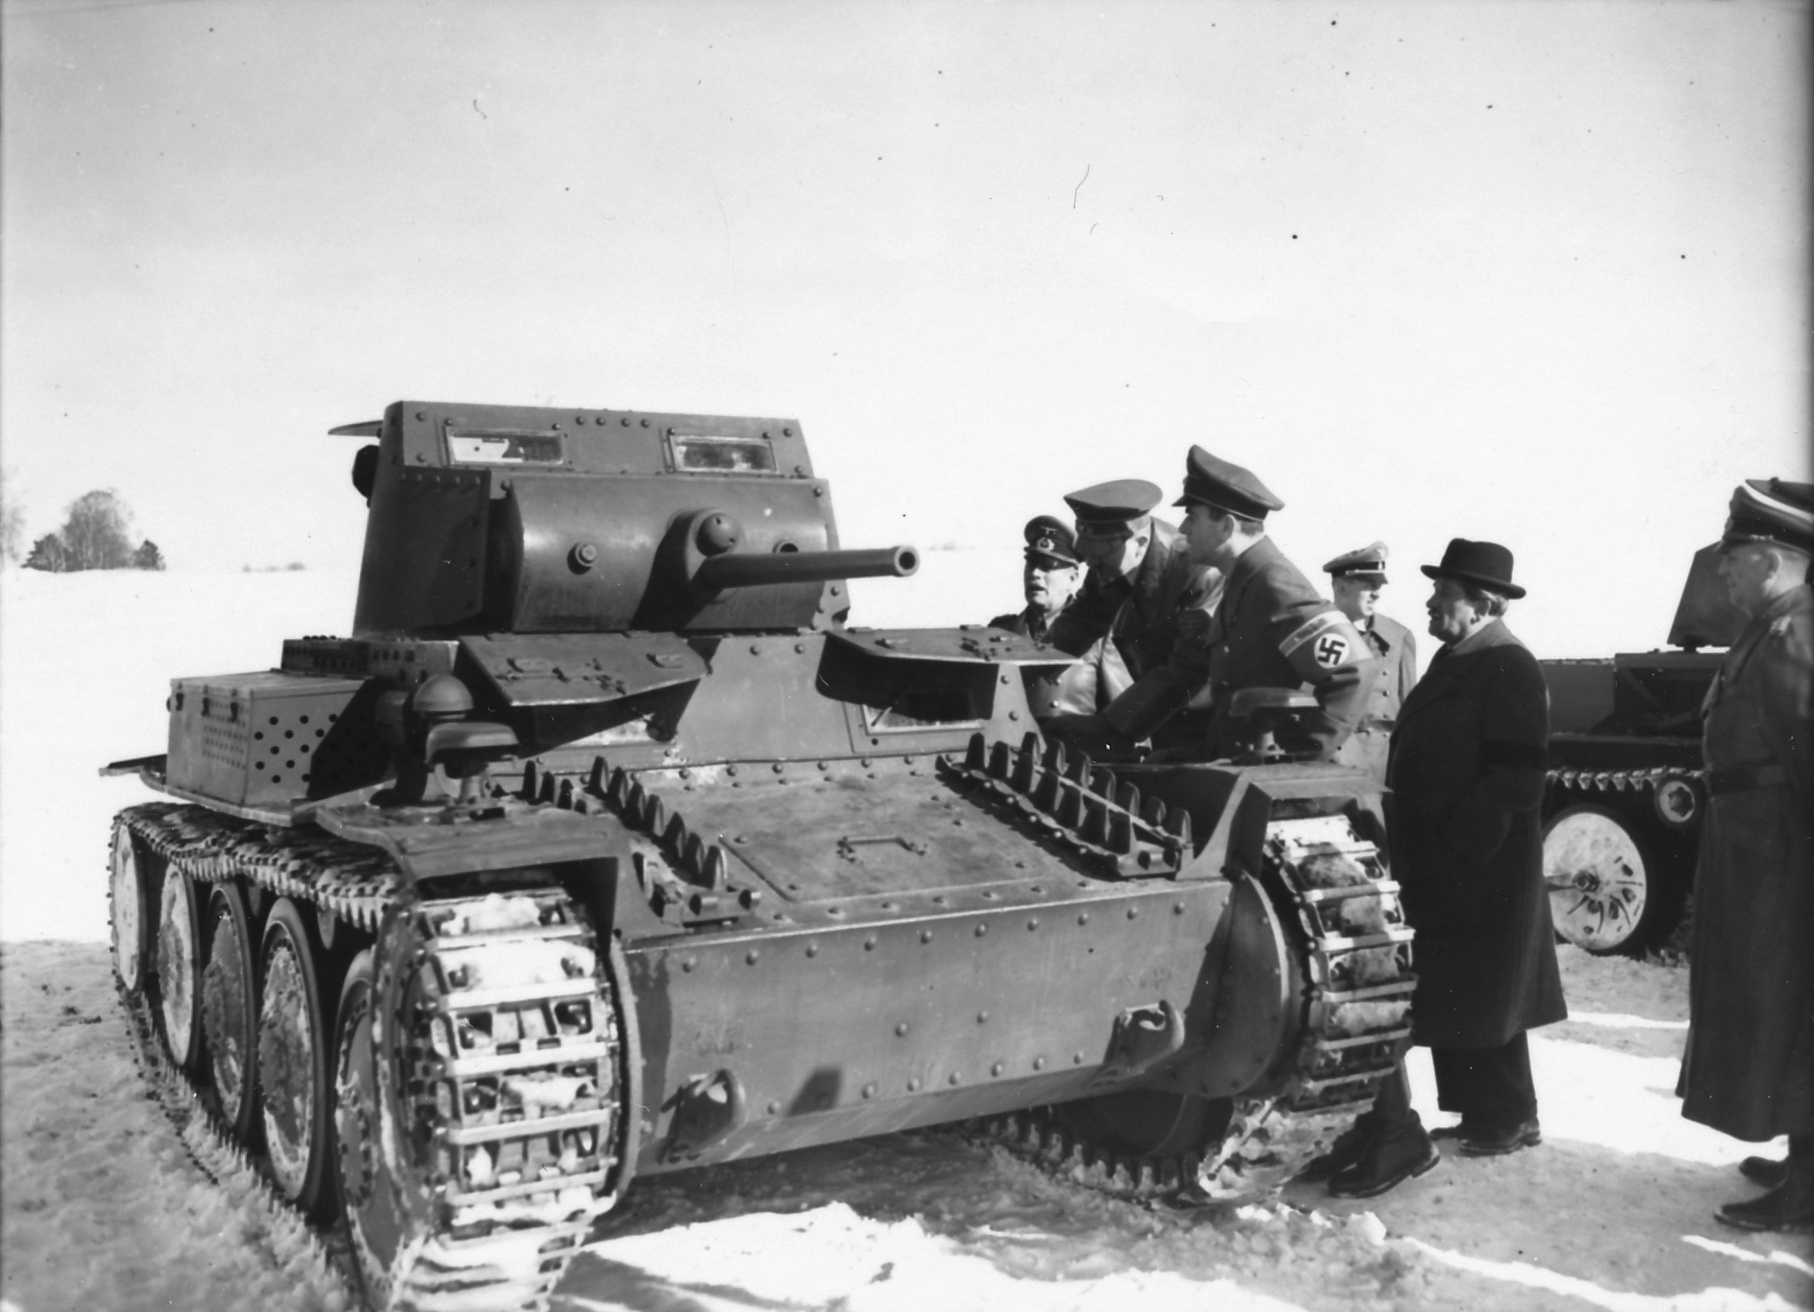 Adolf Hitler inspects new panzers near his Wolfsschanze headquarters